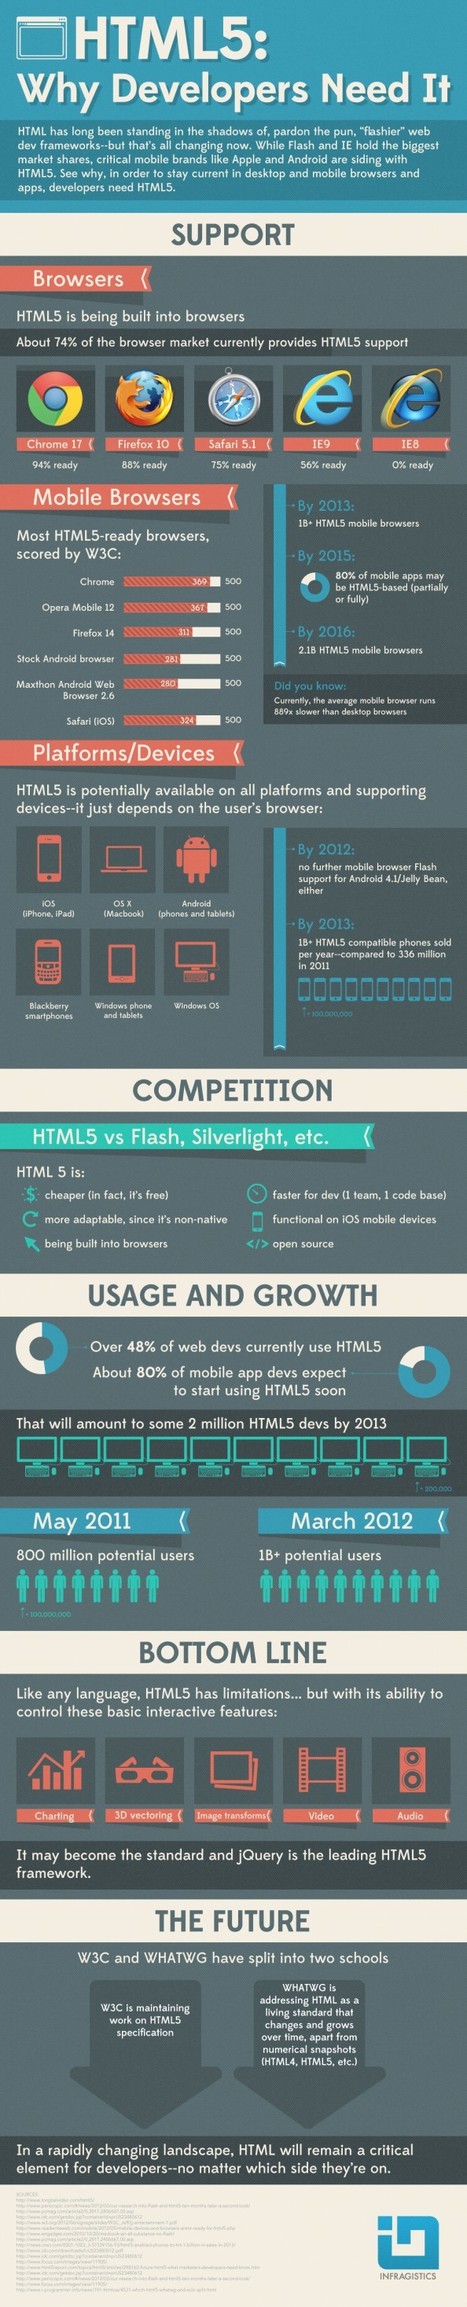 Por qué el HTML 5 es necesario – infografía | Pedalogica: educación y TIC | Scoop.it